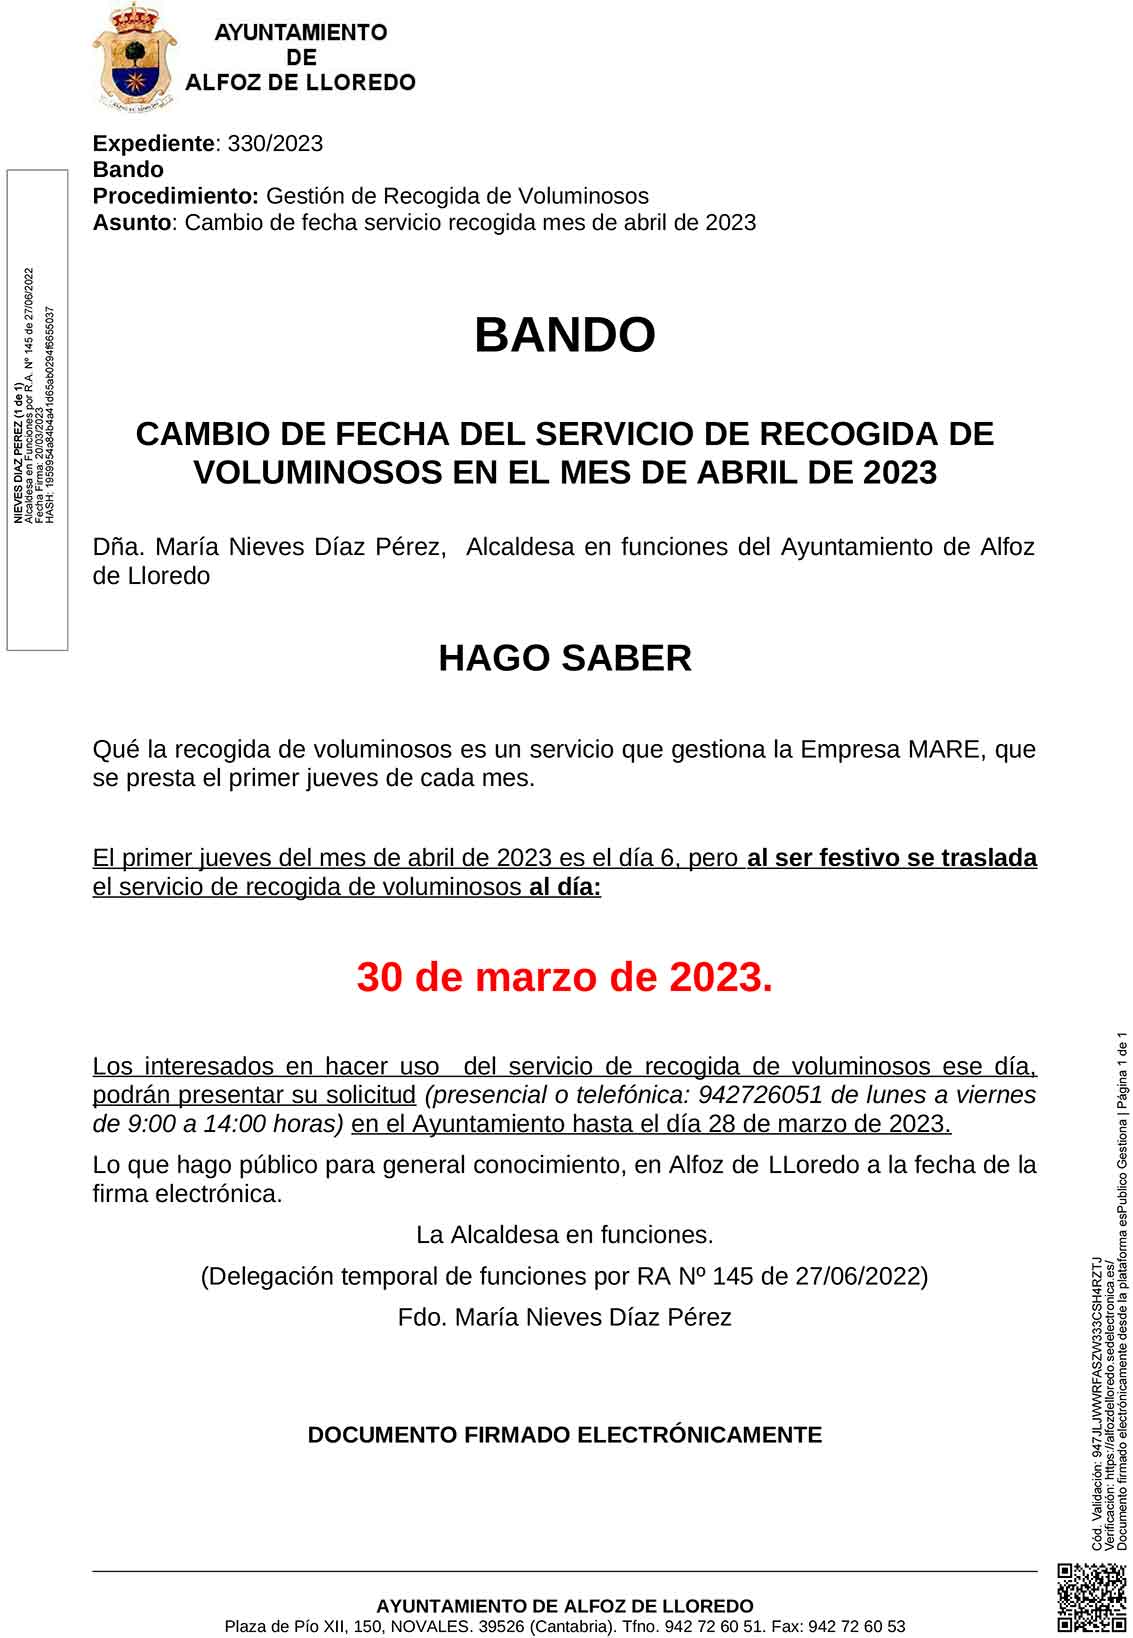 Bando. Cambio de fecha del servicio de recogida de voluminosos mes de abril 2023